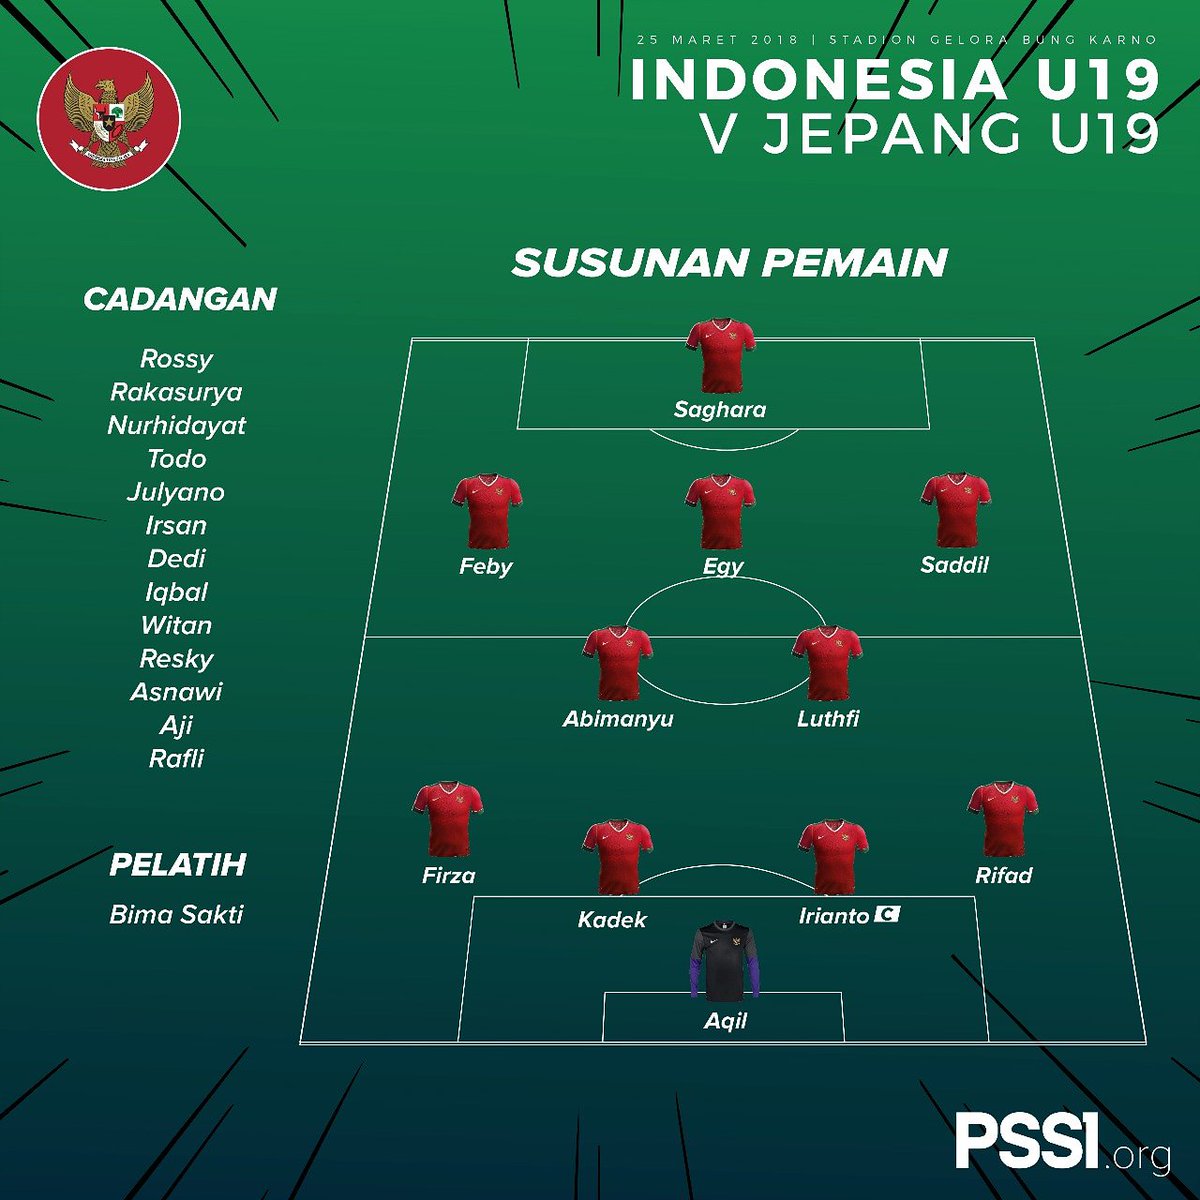 Timnas U19 Indonesia Vs Jepang Inilah Susunan Pemain Indonesia Egy Di Belakang Hanis Saghara Tribunbatam Id